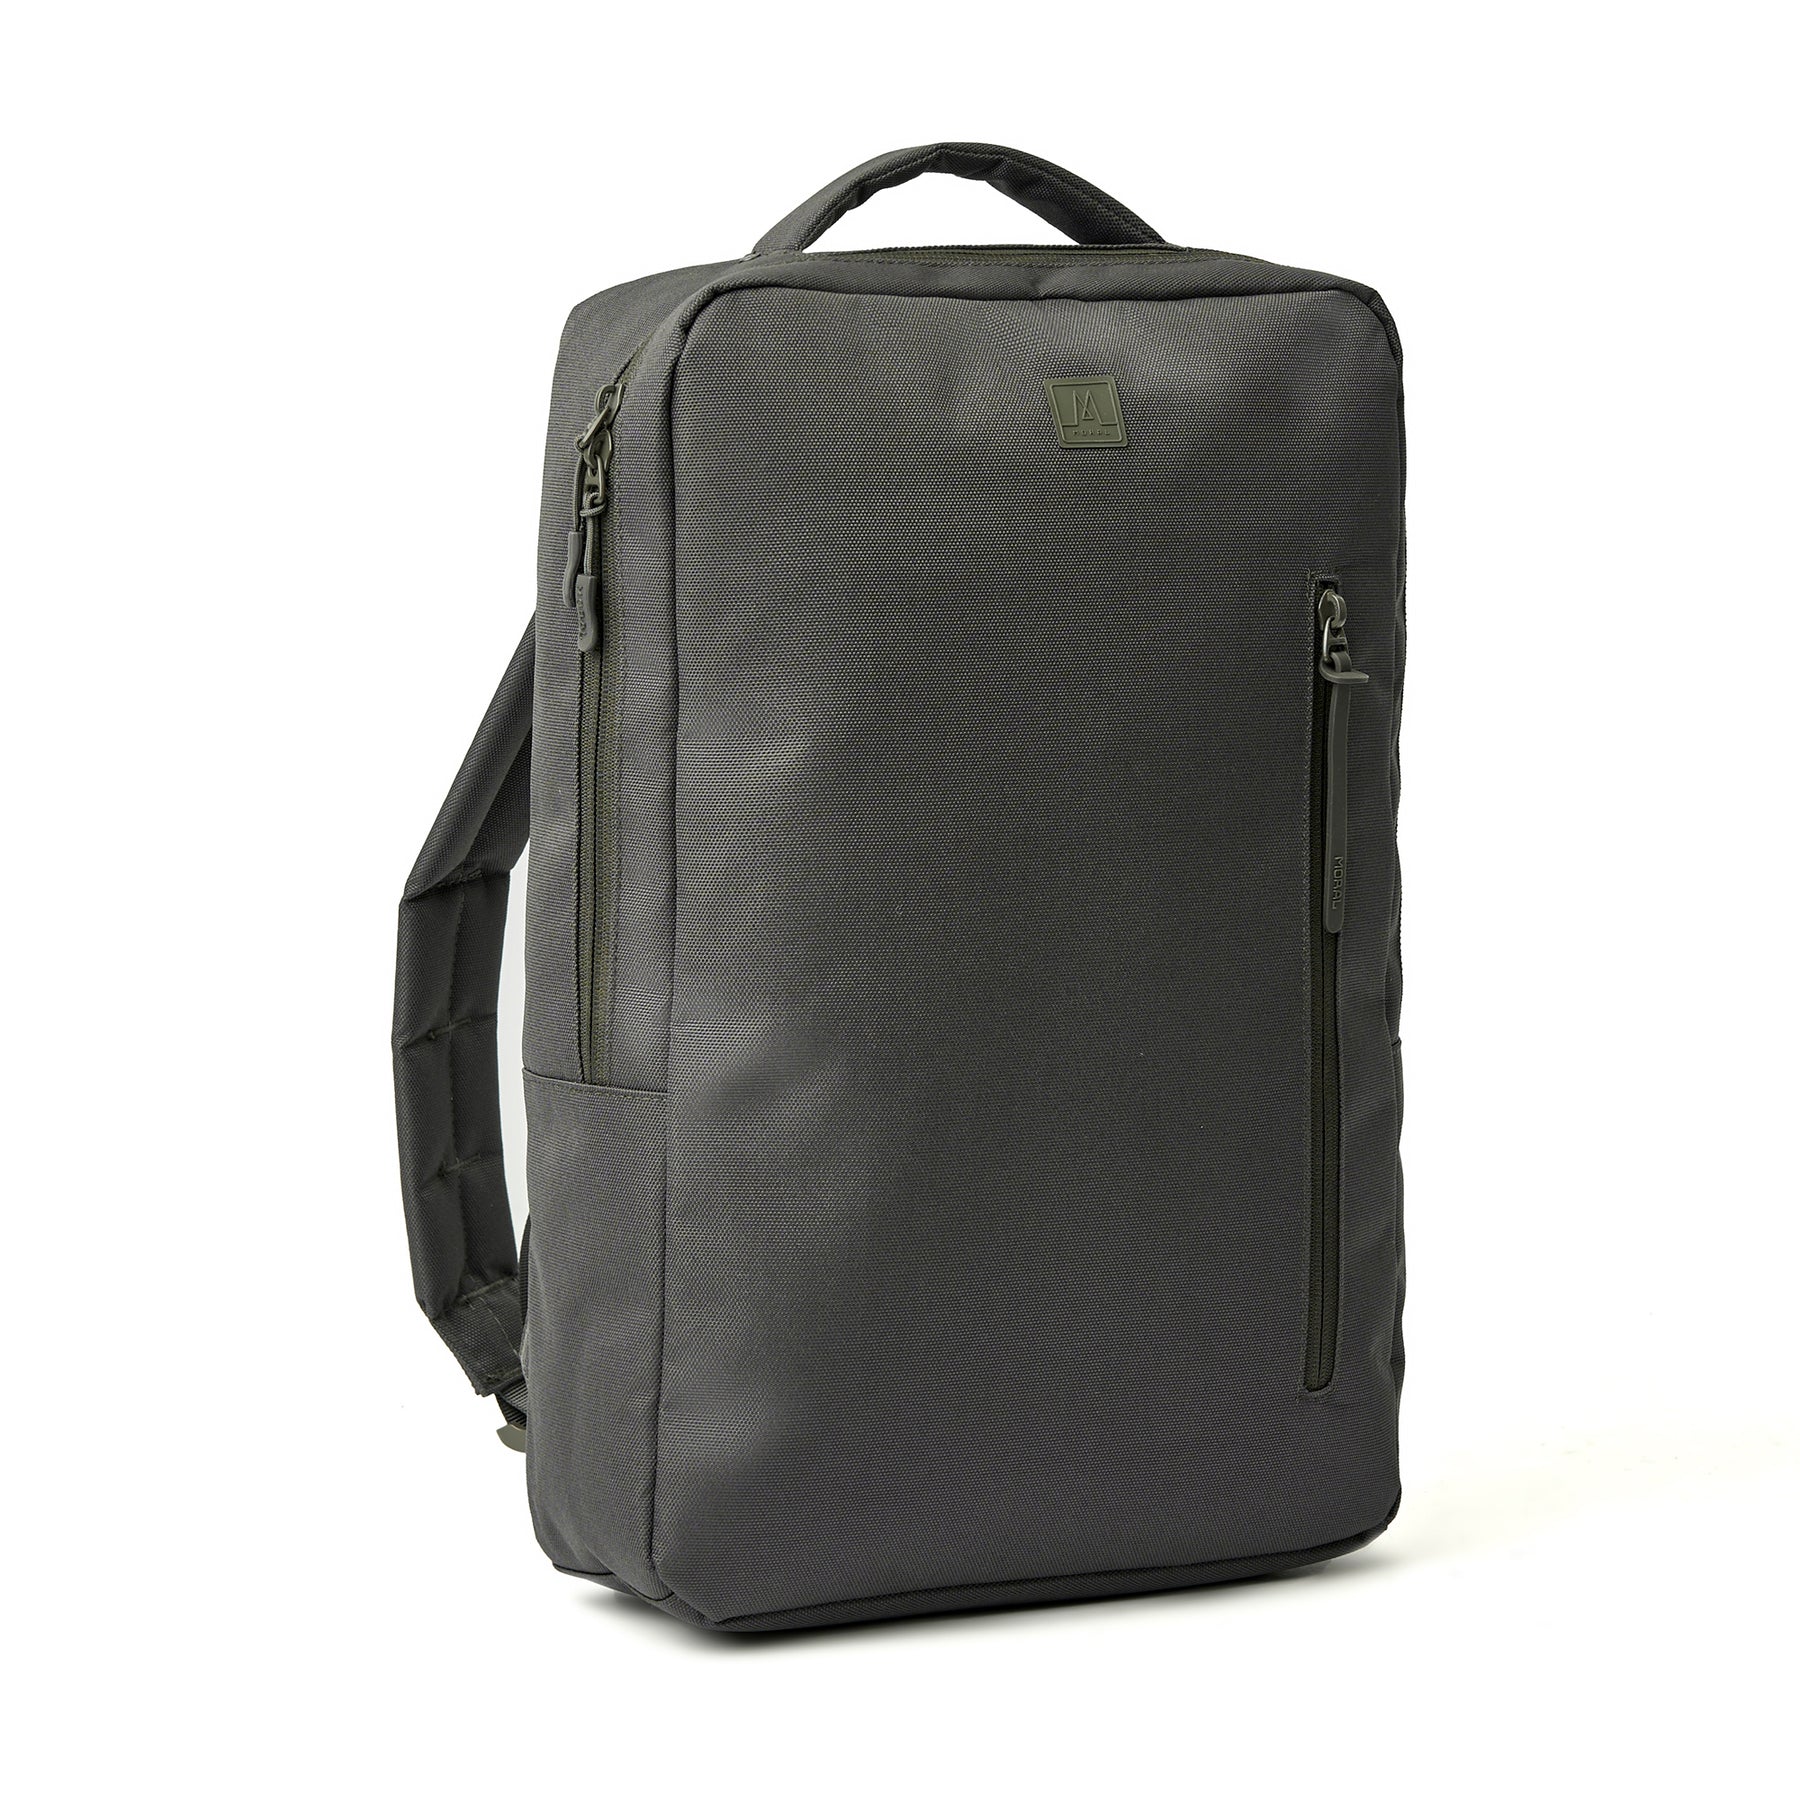 Beaufort Backpack Basic